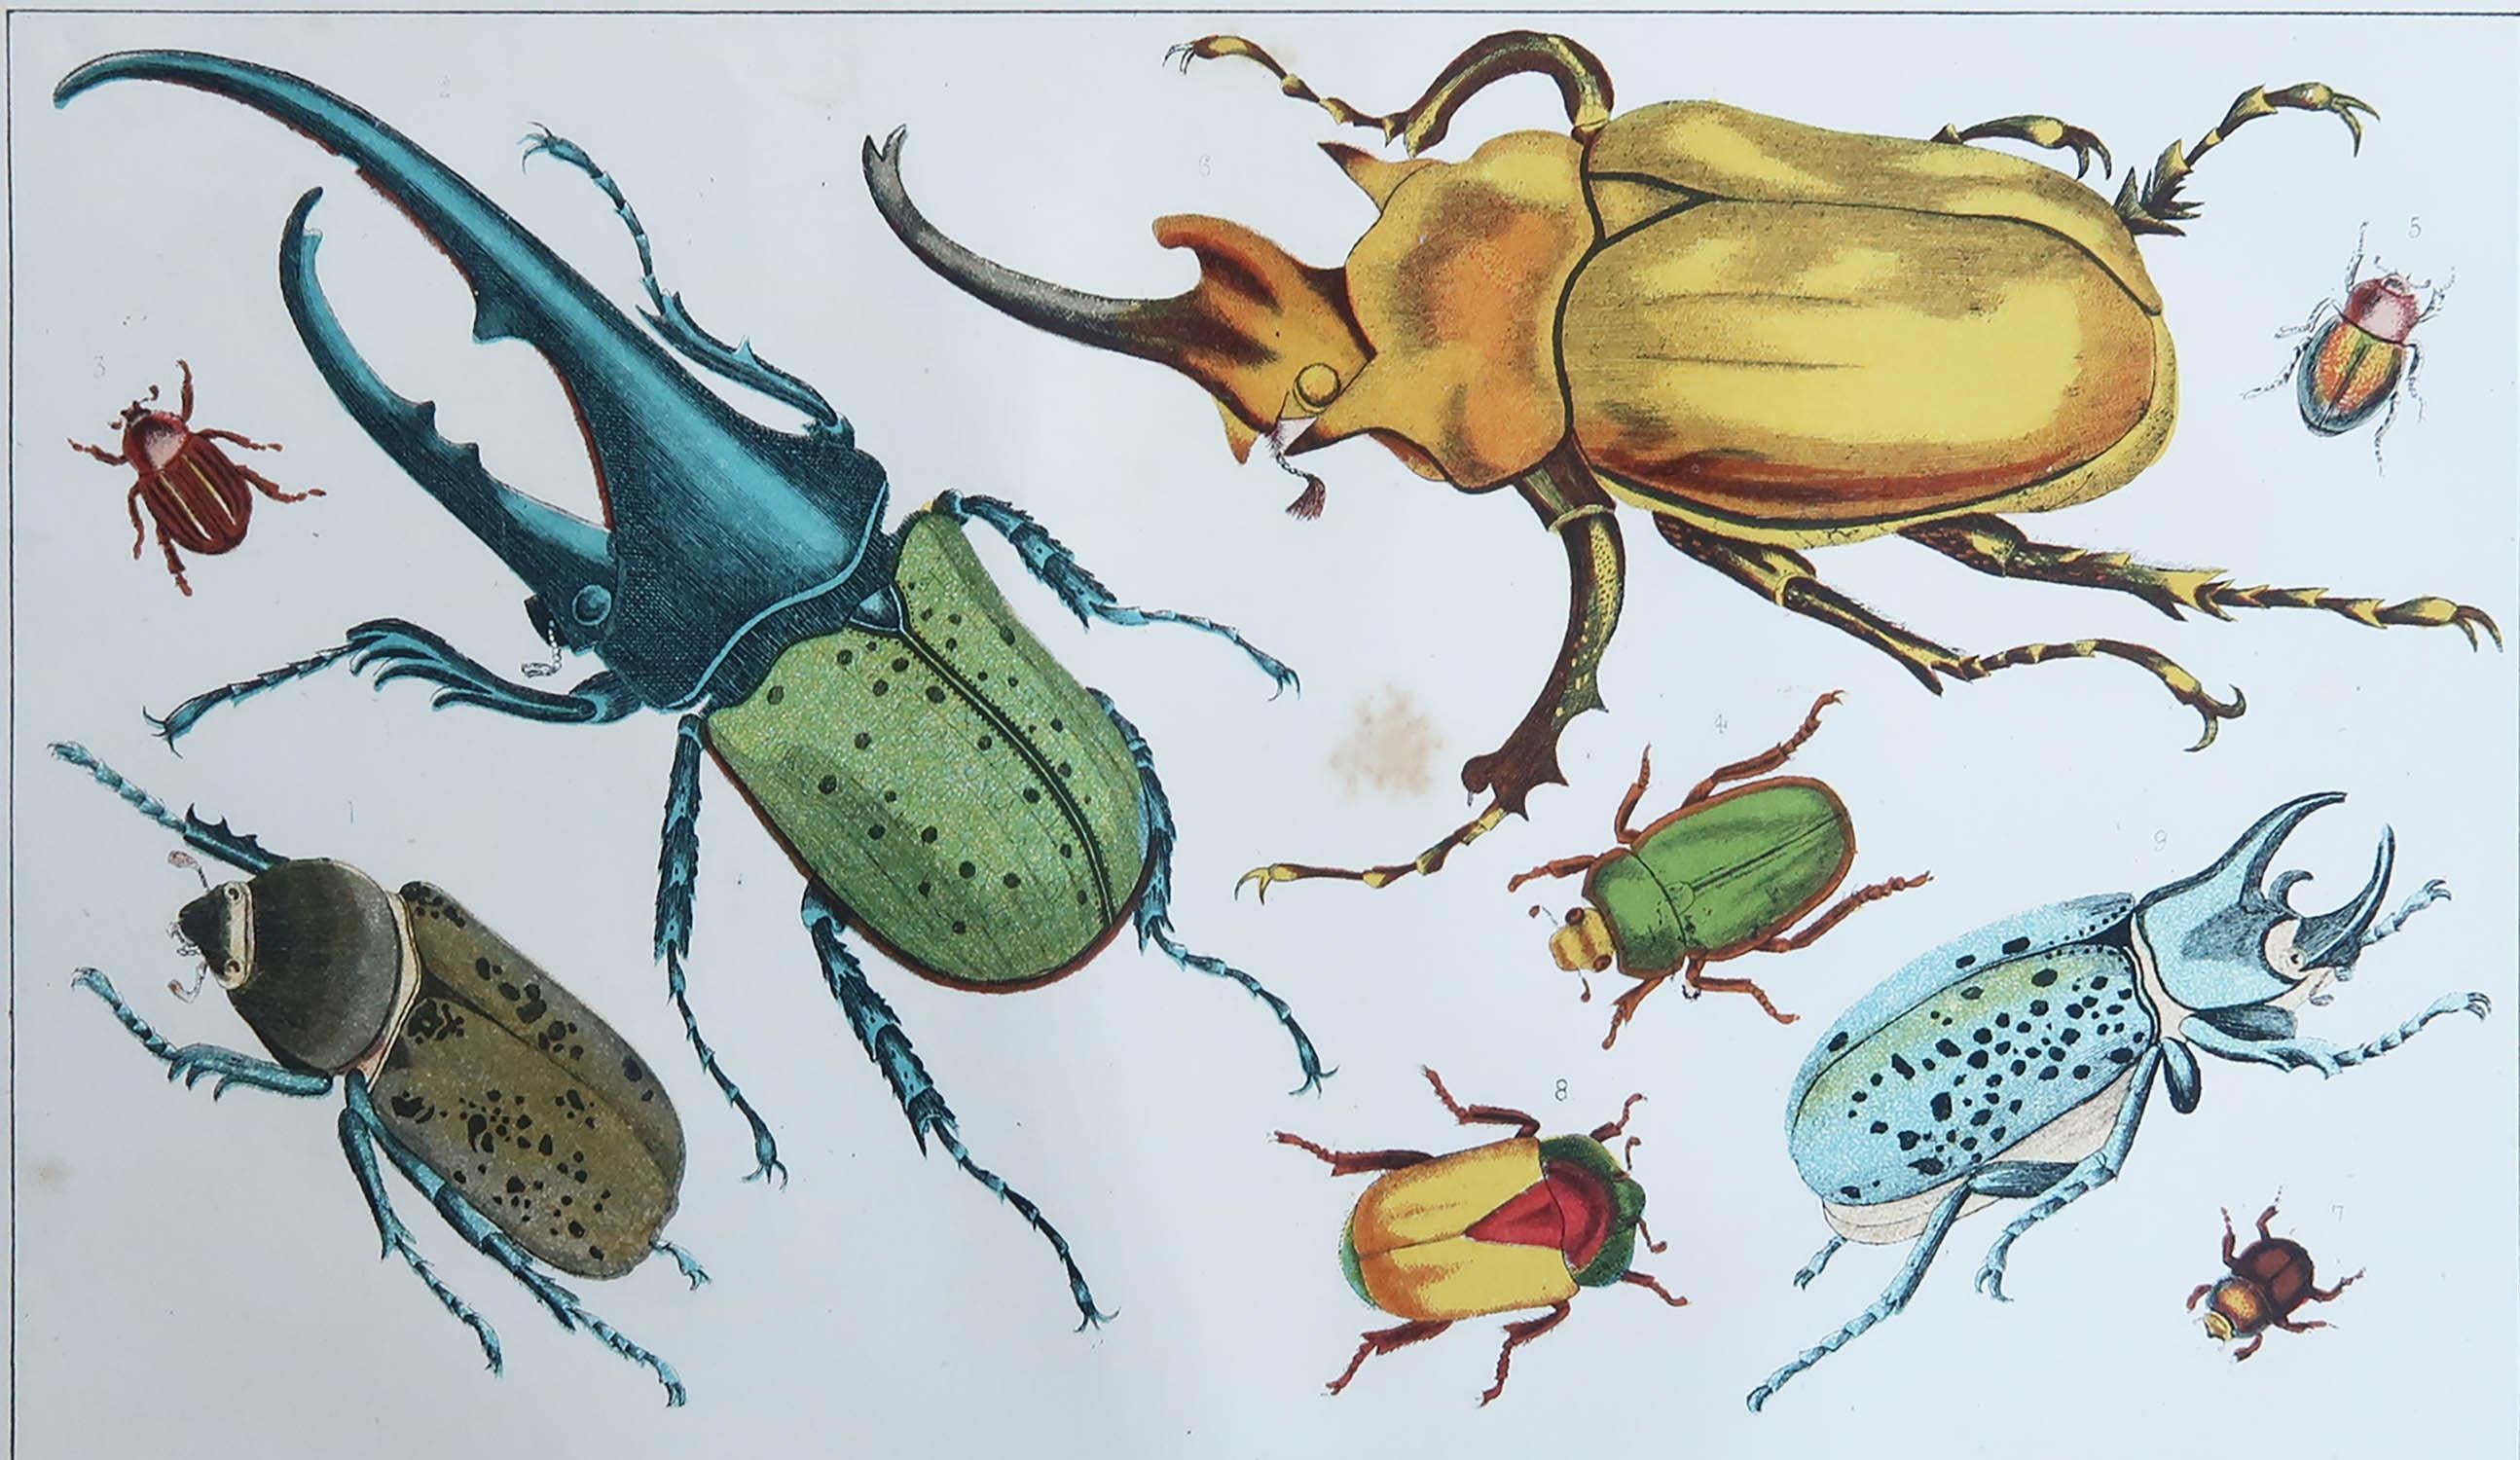 Tolles Bild von Käfern.

Ungerahmt. So haben Sie die Möglichkeit, Ihre eigene Auswahl an Rahmen zu treffen.

Lithographie nach Cpt. Braun mit Originalfarbe.

Veröffentlicht, 1847.








